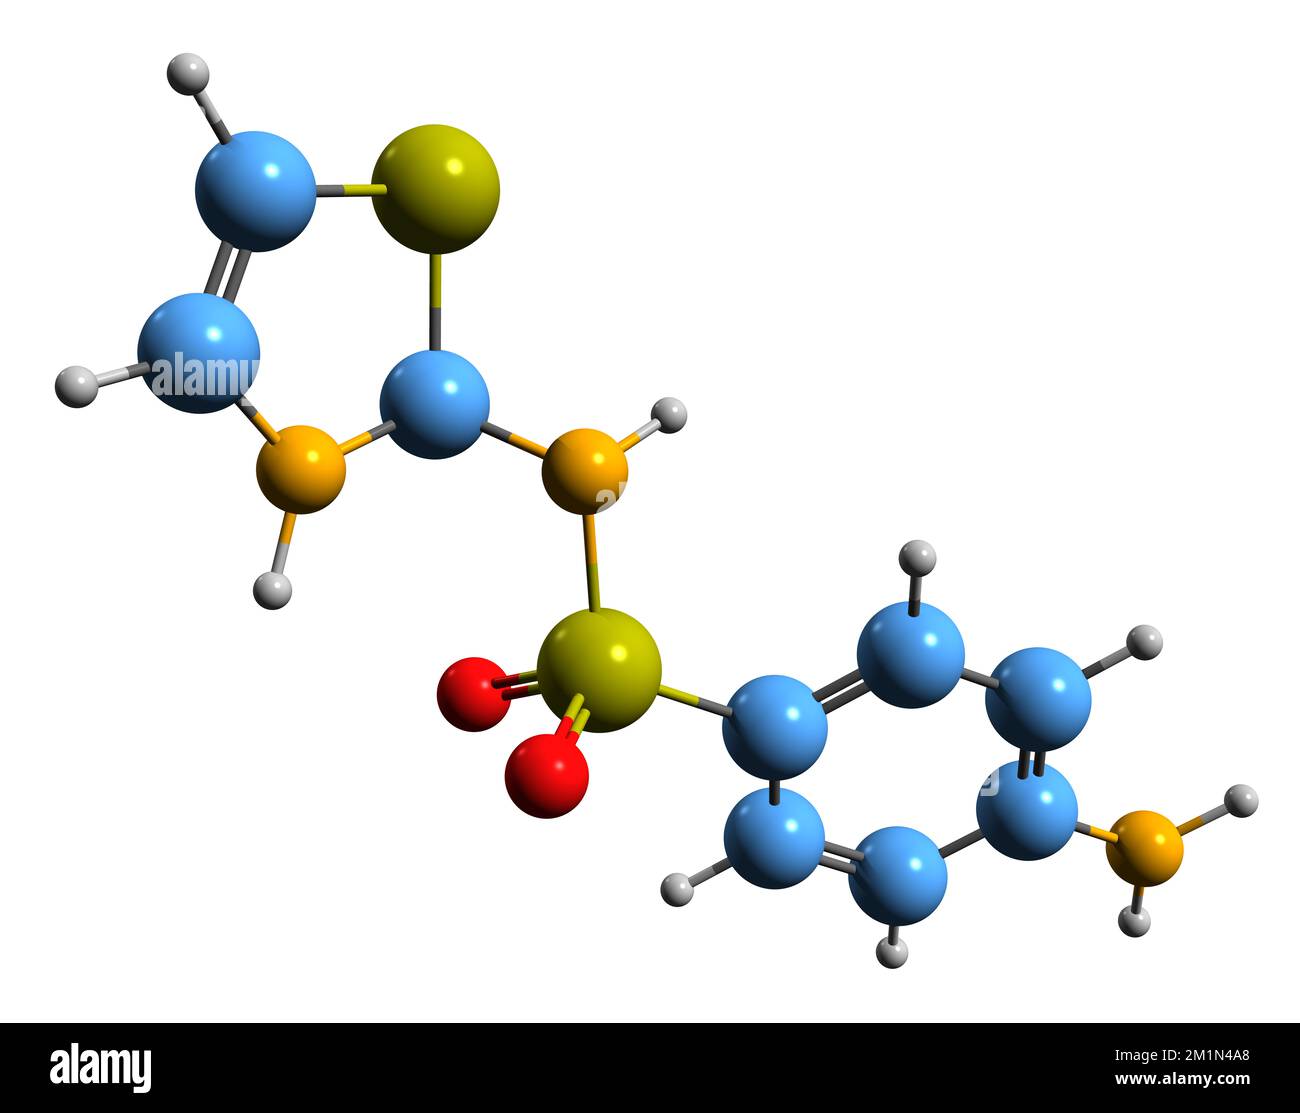 3D-Bild der Sulfathiazol-Skelettformel - molekularchemische Struktur des auf weißem Hintergrund isolierten Sulfonamids Stockfoto